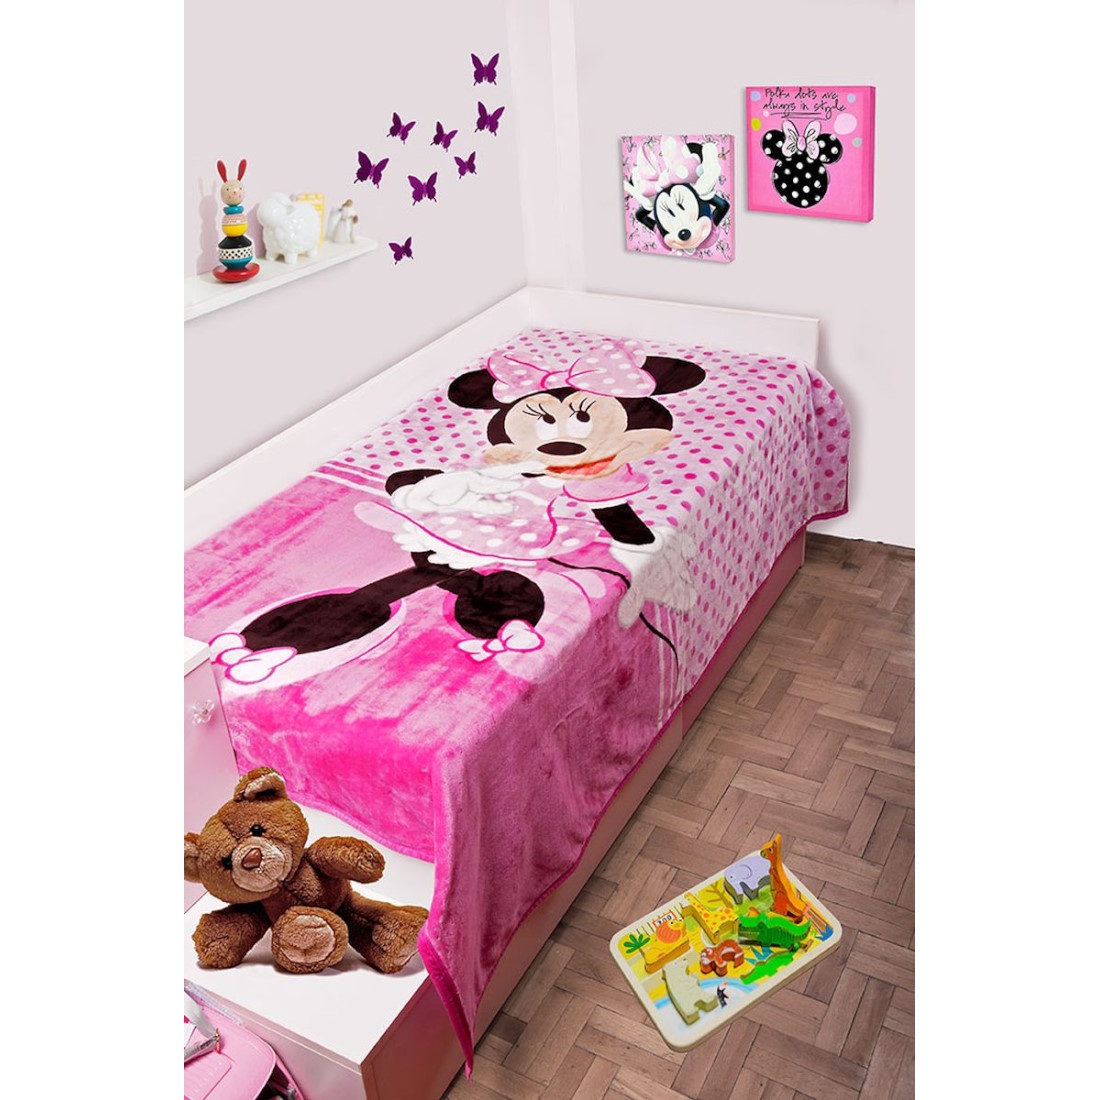 Dimcol-Blanket-DisneyMinnieMouse-Fouchia-2520225601155199